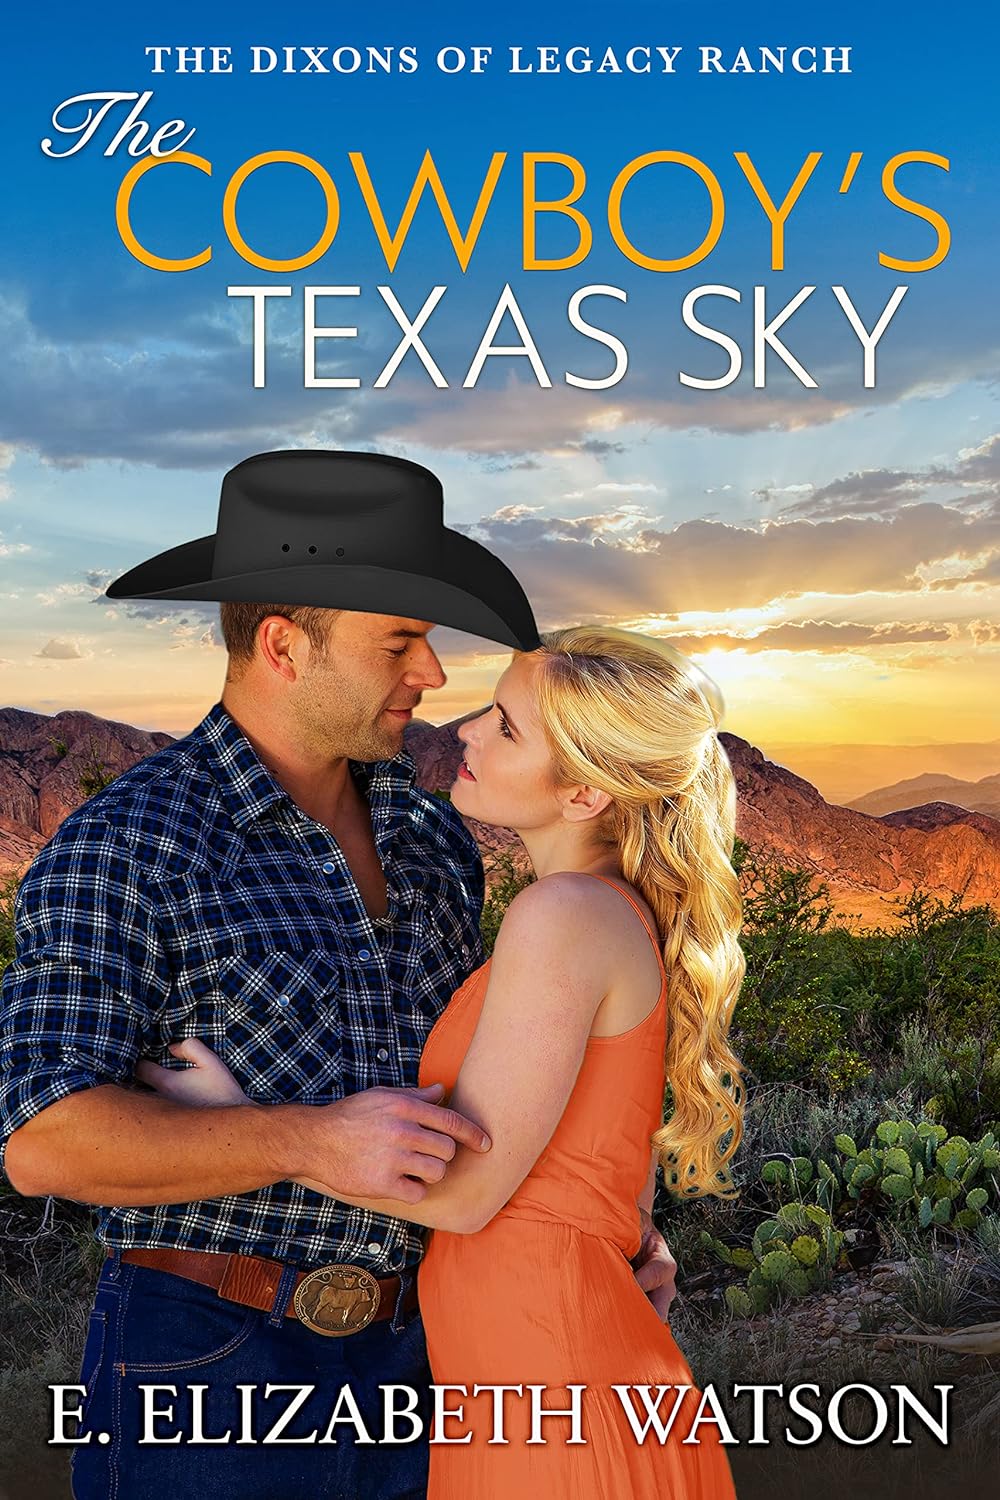 The Cowboys Texas Sky